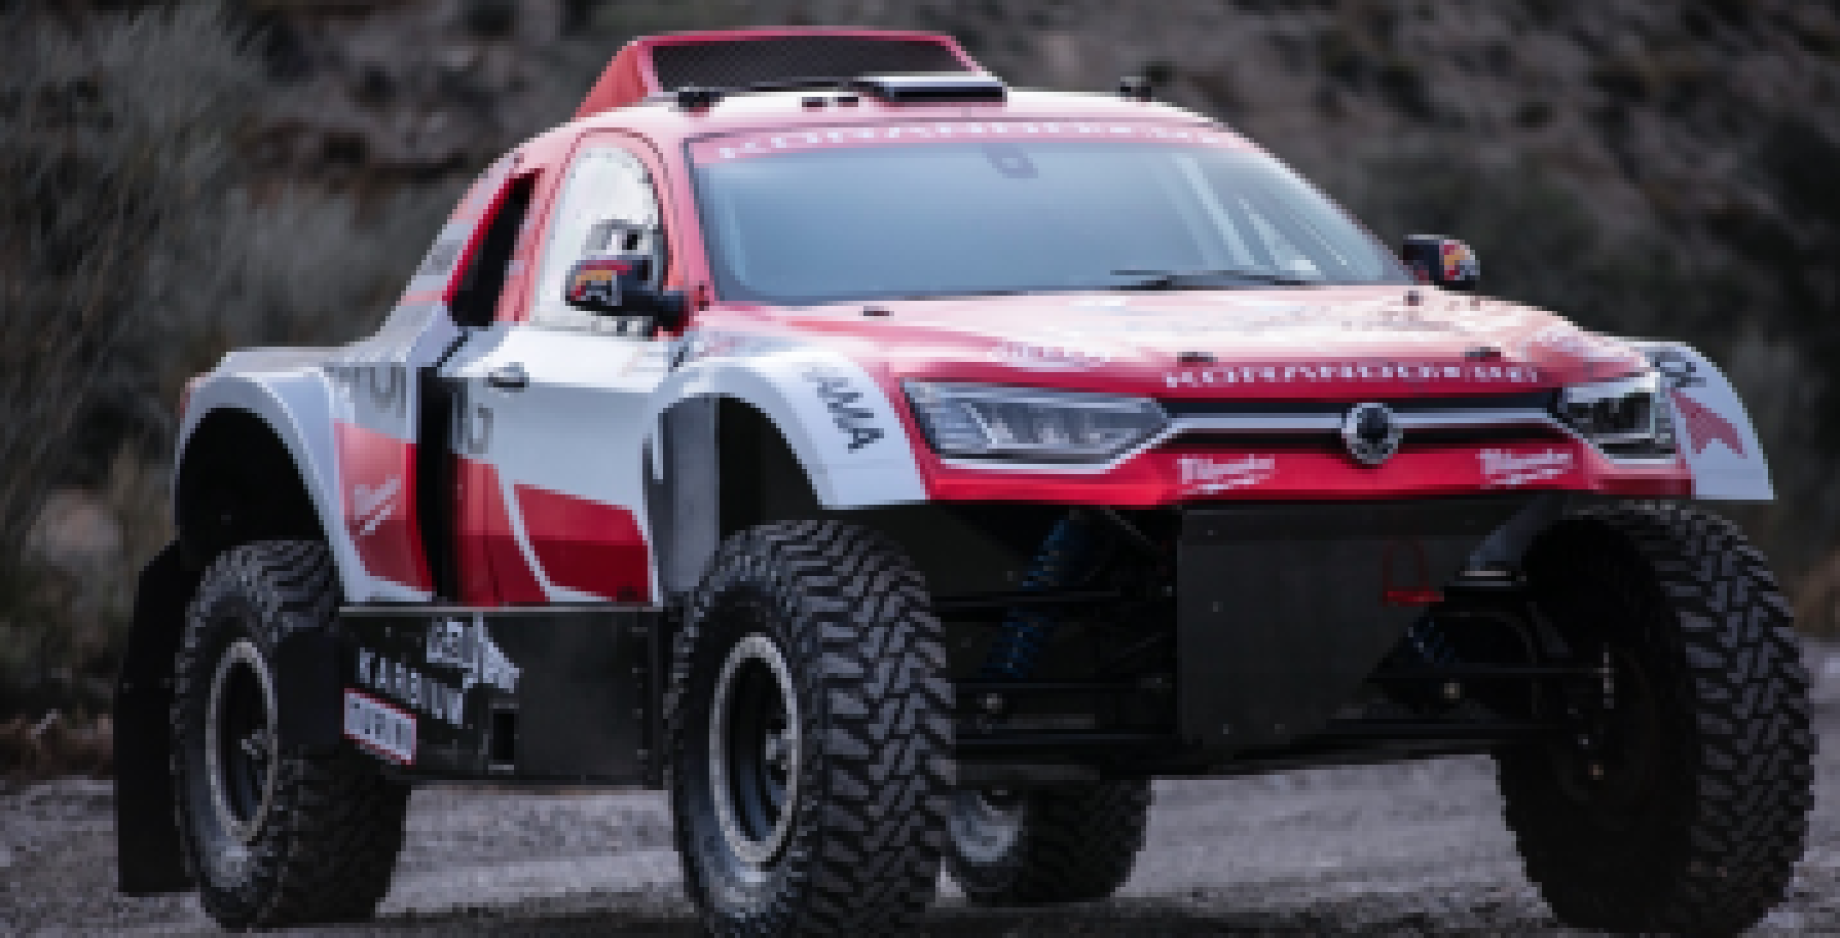 SsangYong sa tretíkrát zúčastňuje na najslávnejších off-road pretekoch Rally Dakar